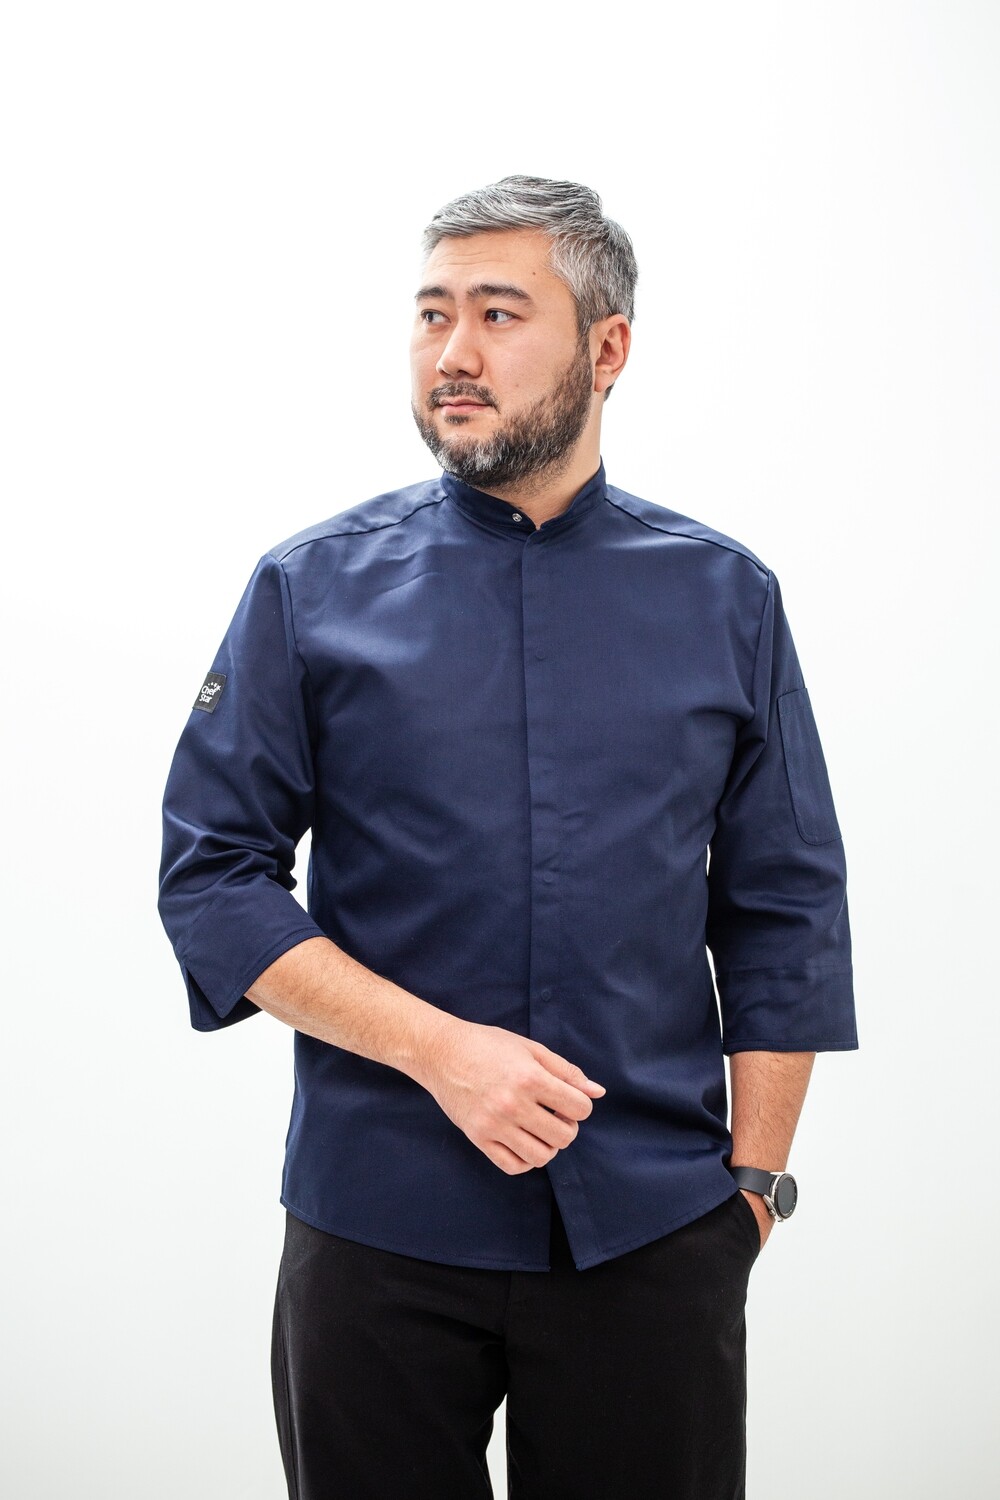 Китель Tokyo Navy (Токио Нэви), Chef Star